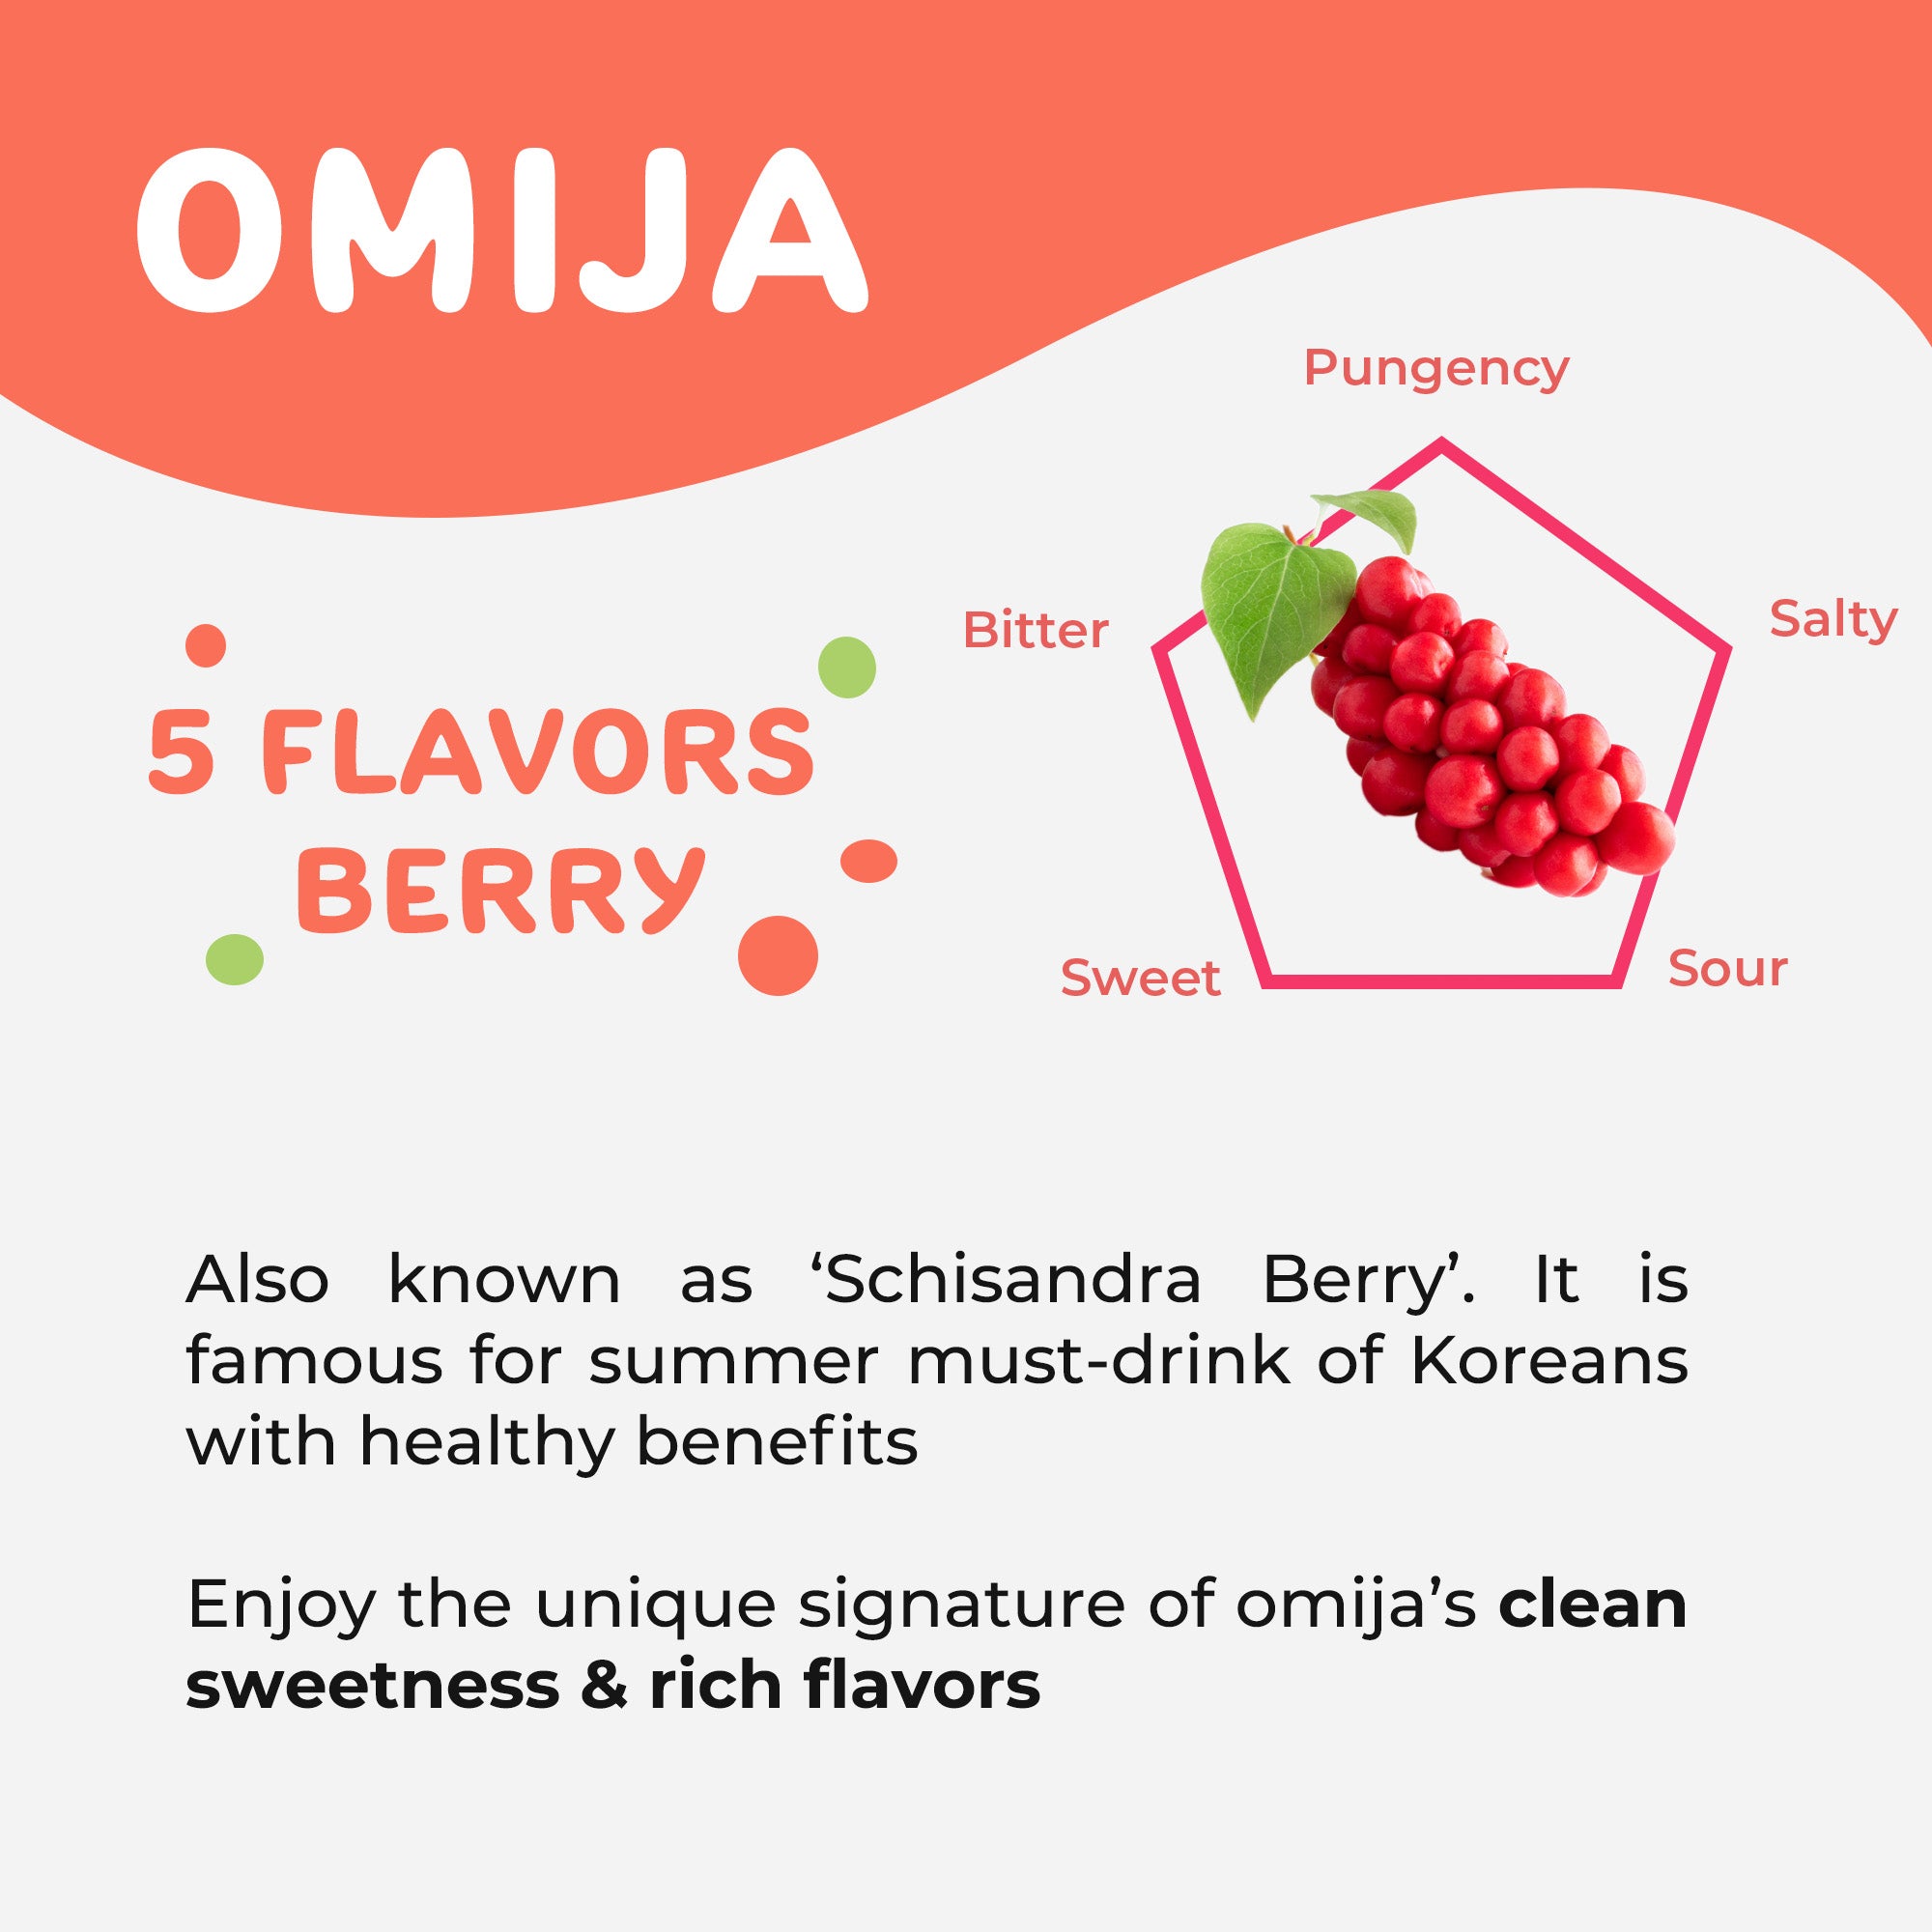 Benefits of OMIJA(Schisandra Berry)